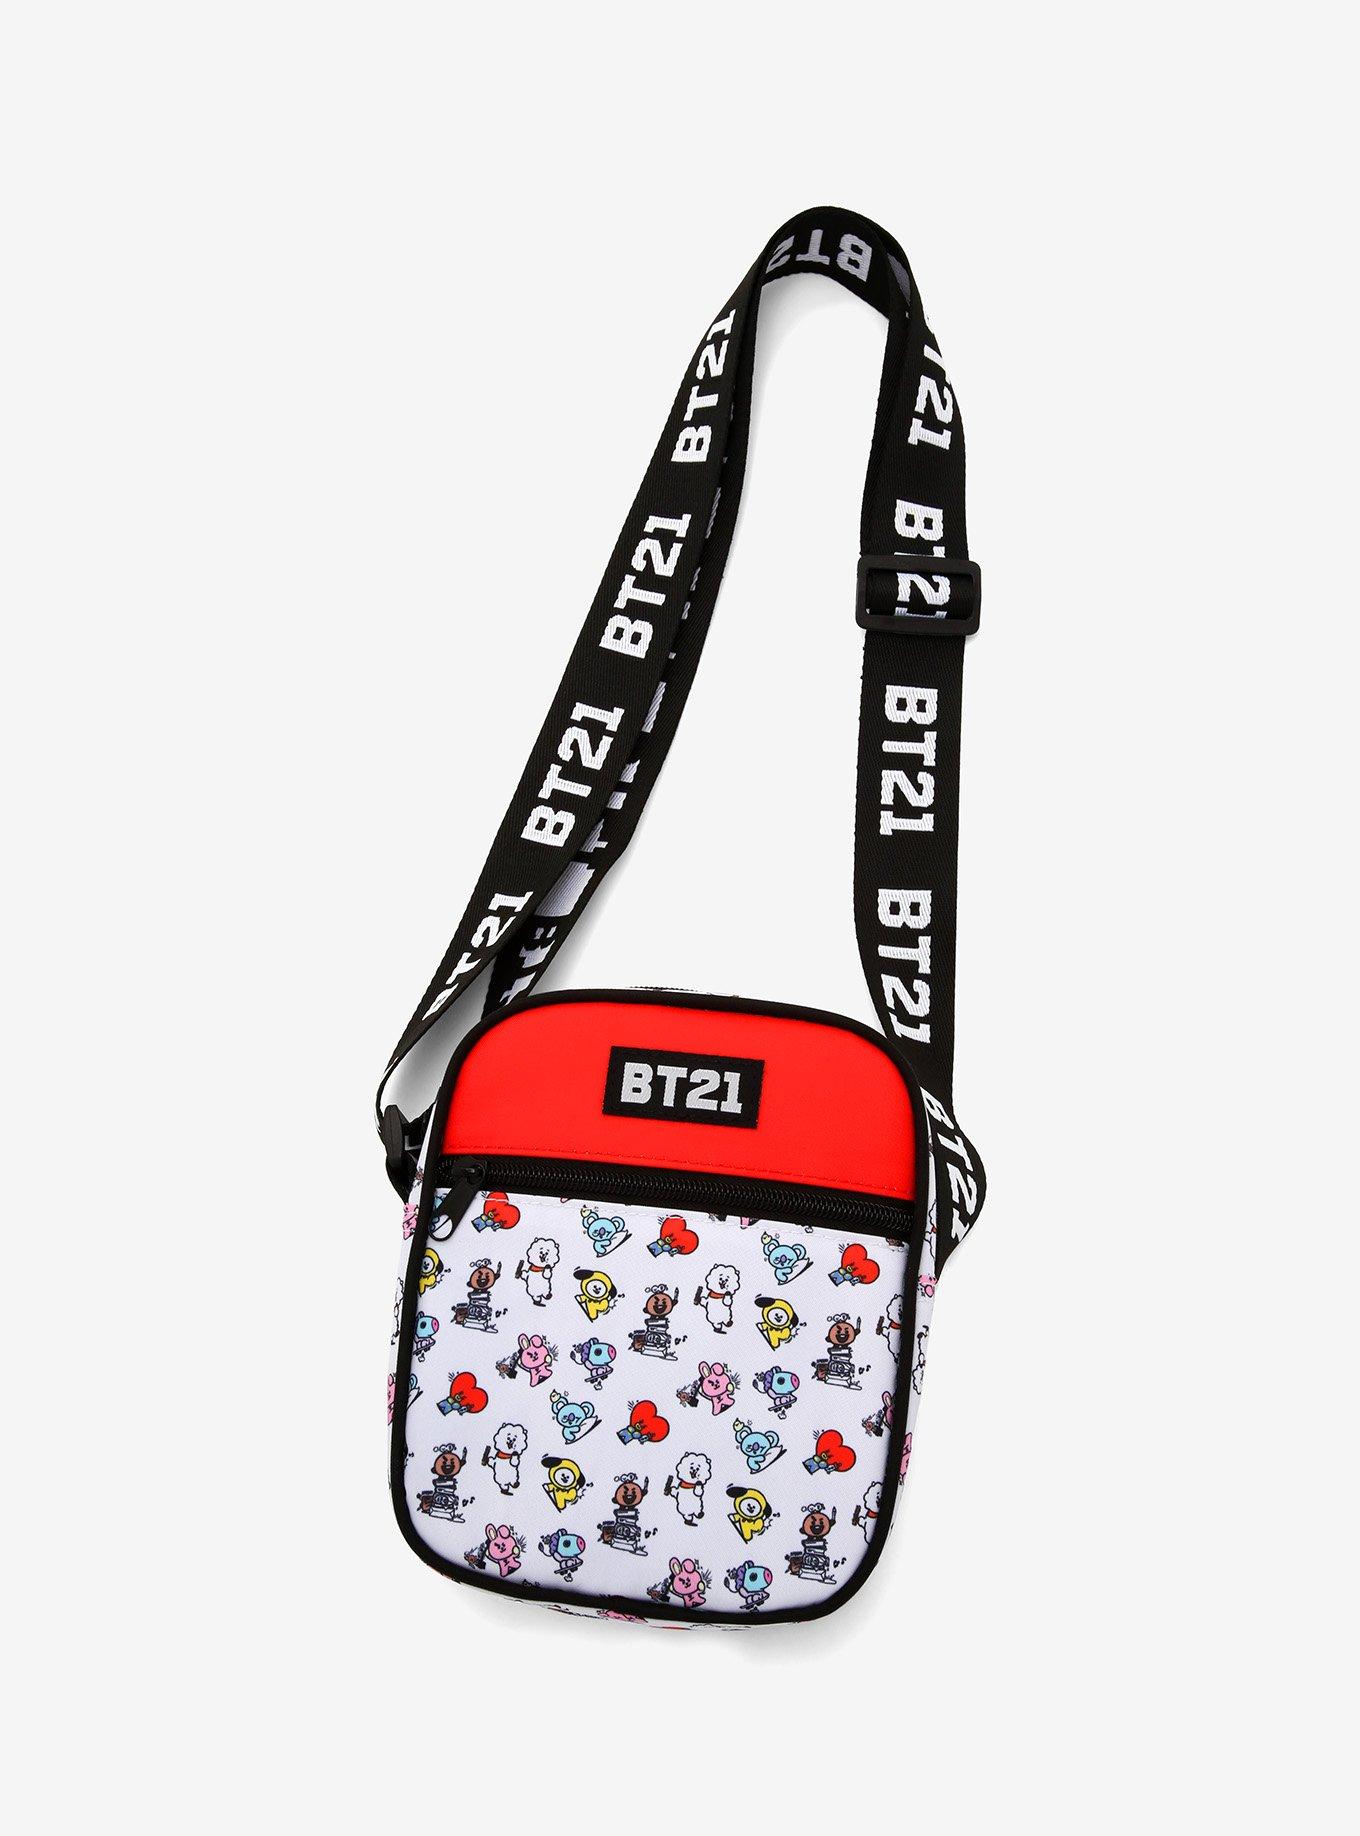 BTS BT21 Sling bag shoulder bag crossbody bag